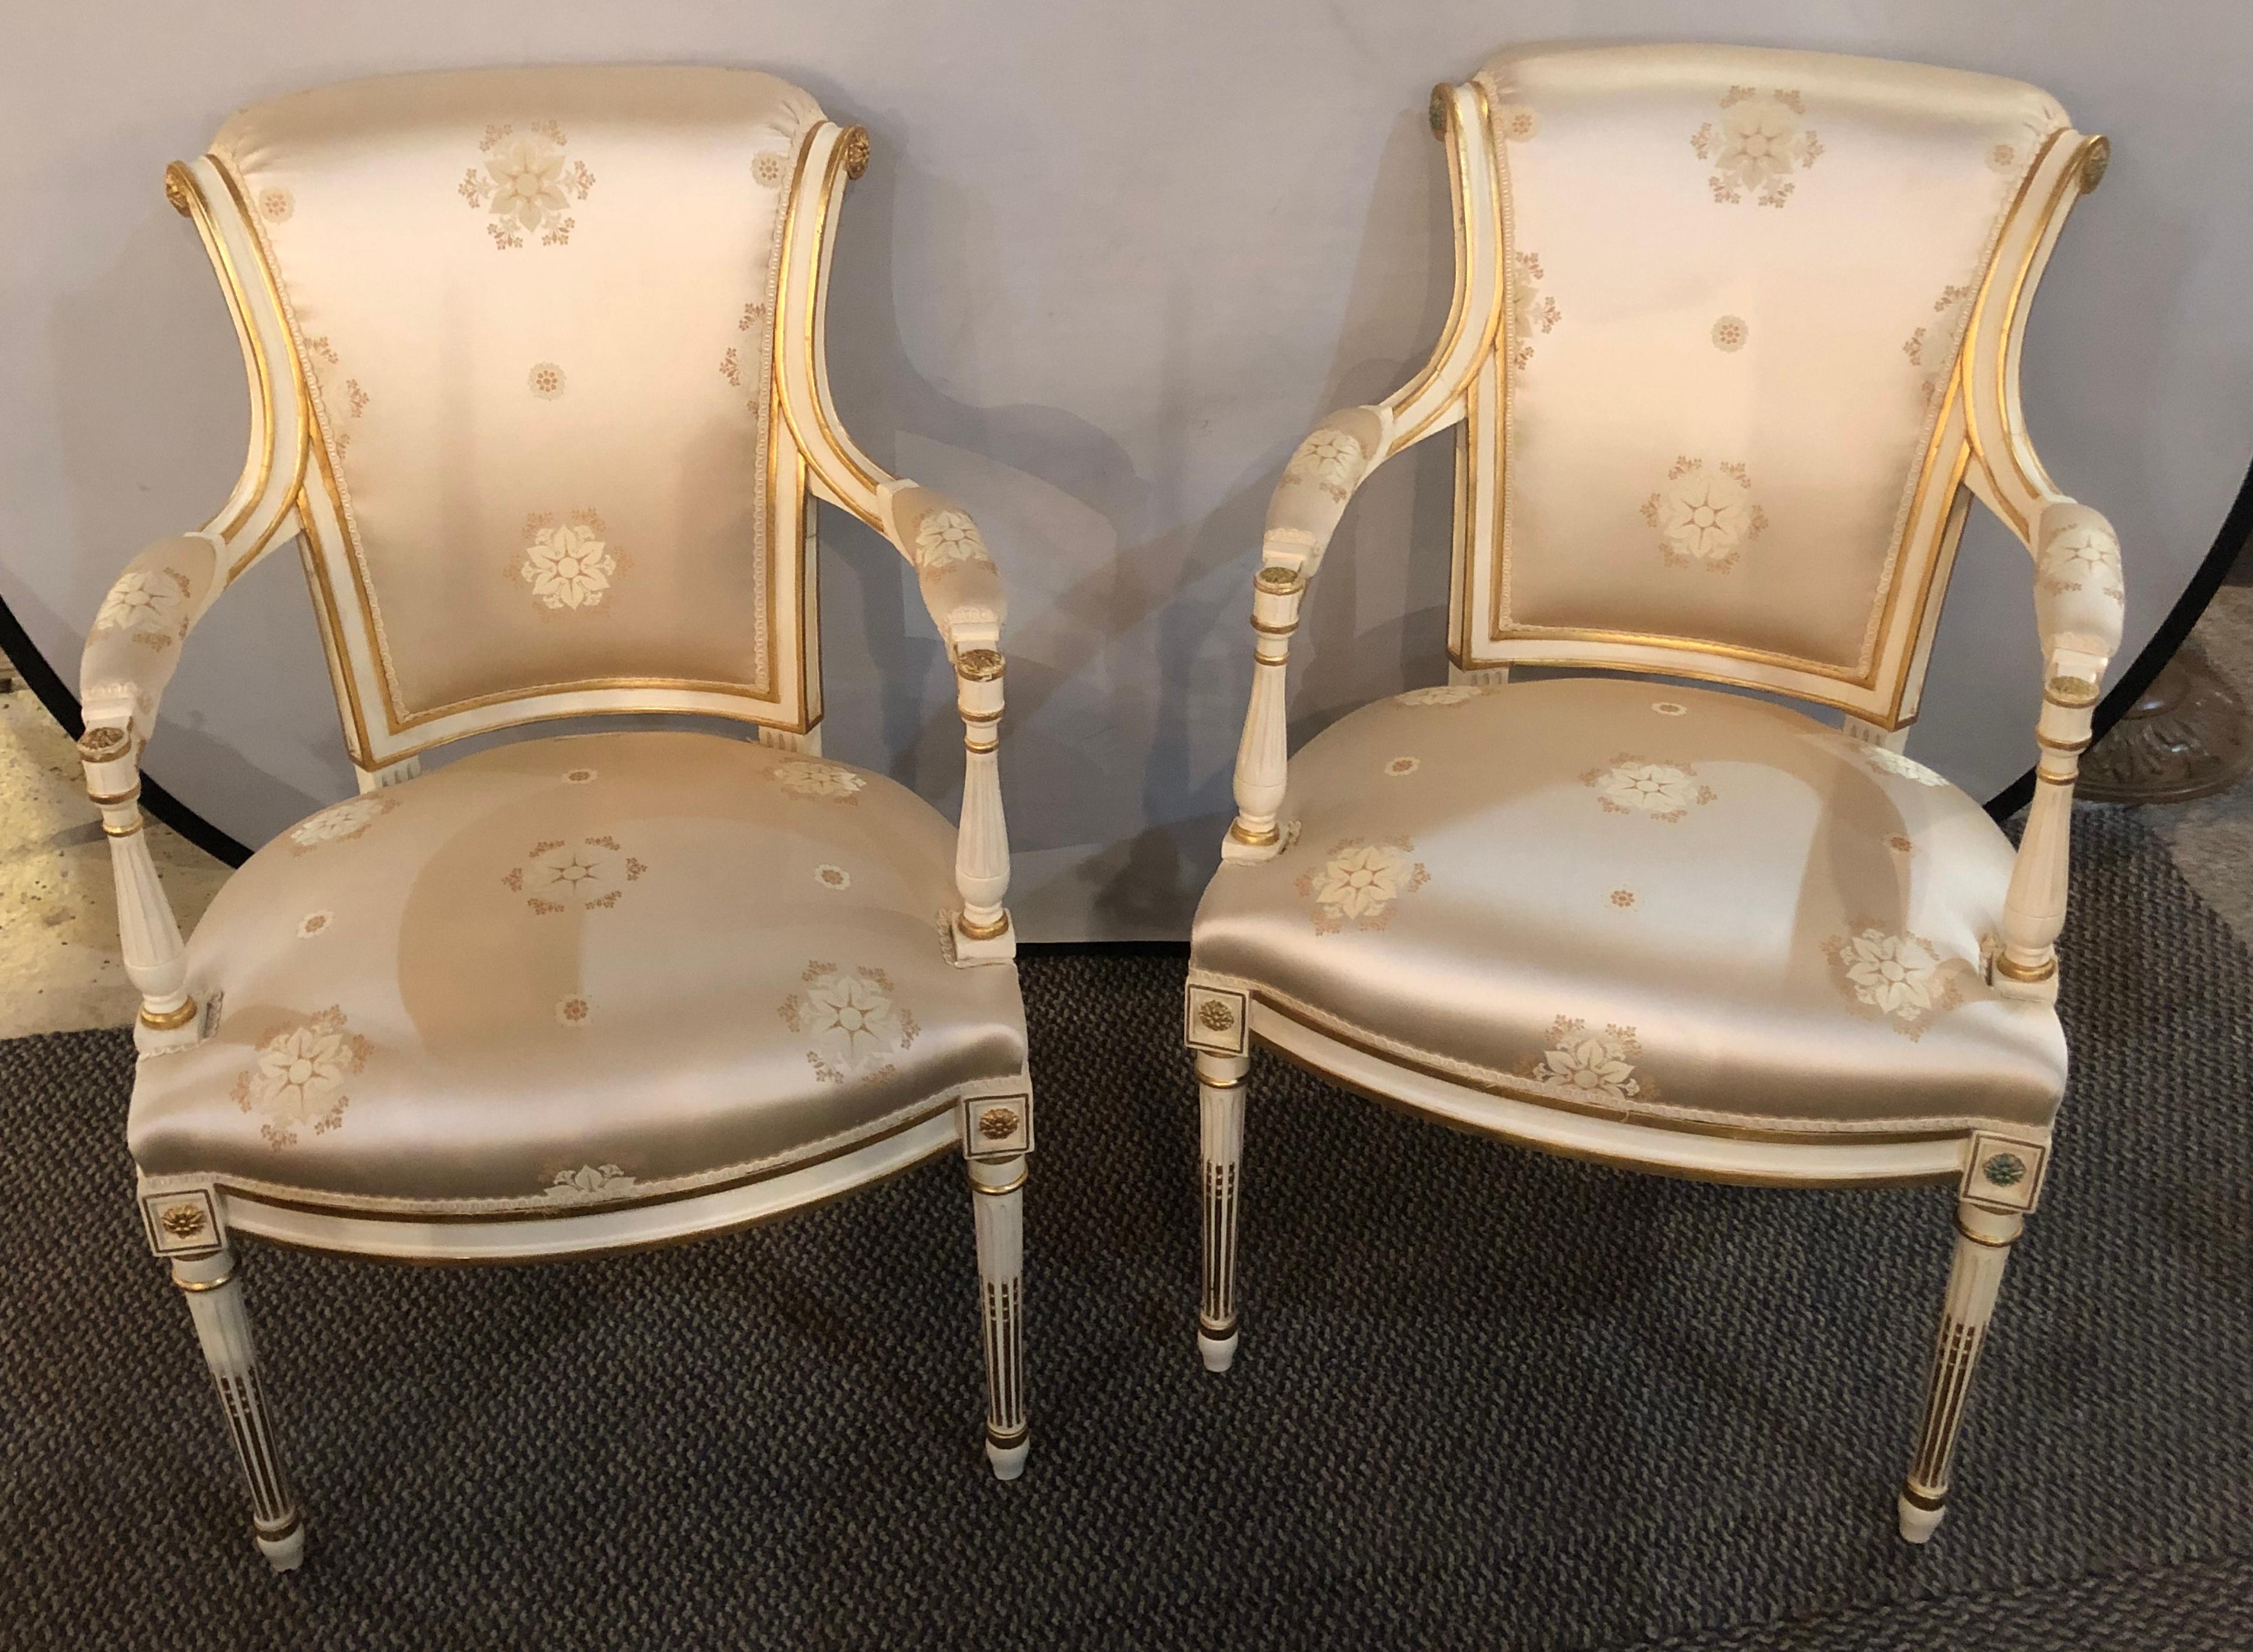 Paire de fauteuils de style Louis XVI, Hollywood Regency, tapissés de soie Scalamandre. Je dispose de quatre paires de ces fauteuils merveilleusement décoratifs et rembourrés. Chacun d'entre eux est présenté dans un cadre assorti, décoré d'une